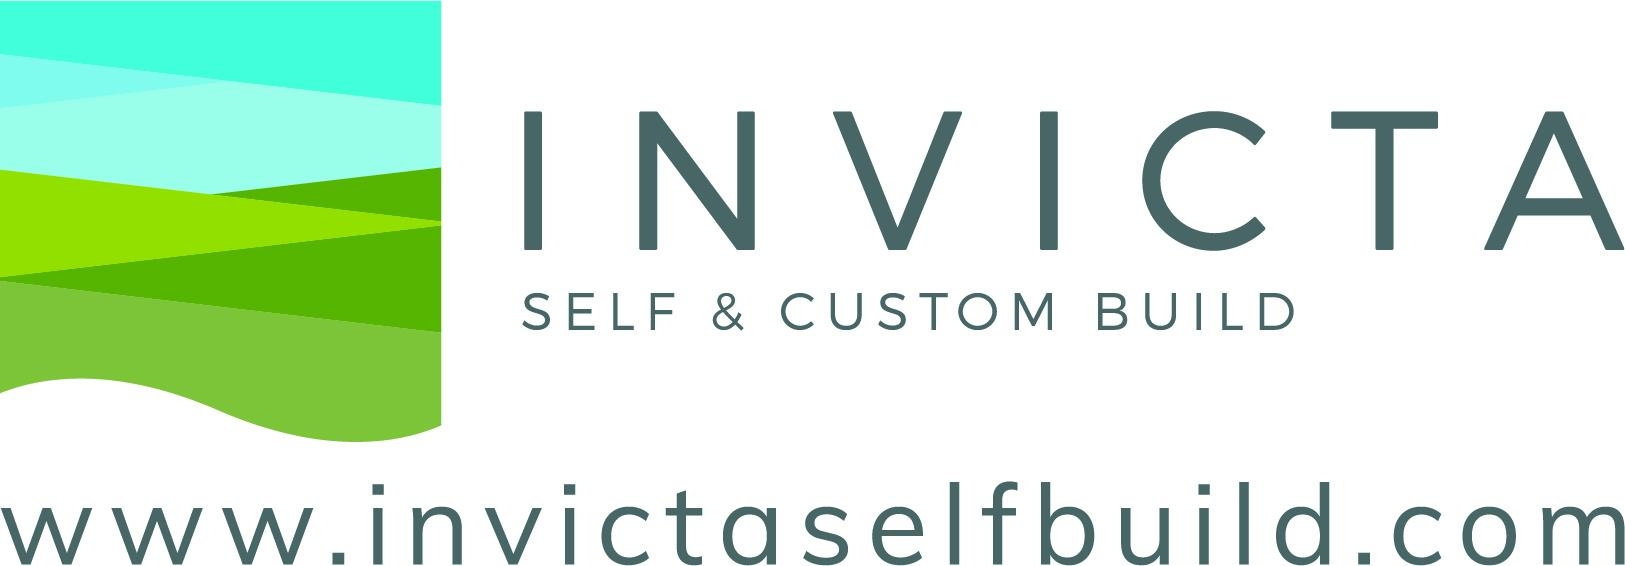 Invicta_Logo_Website.jpg